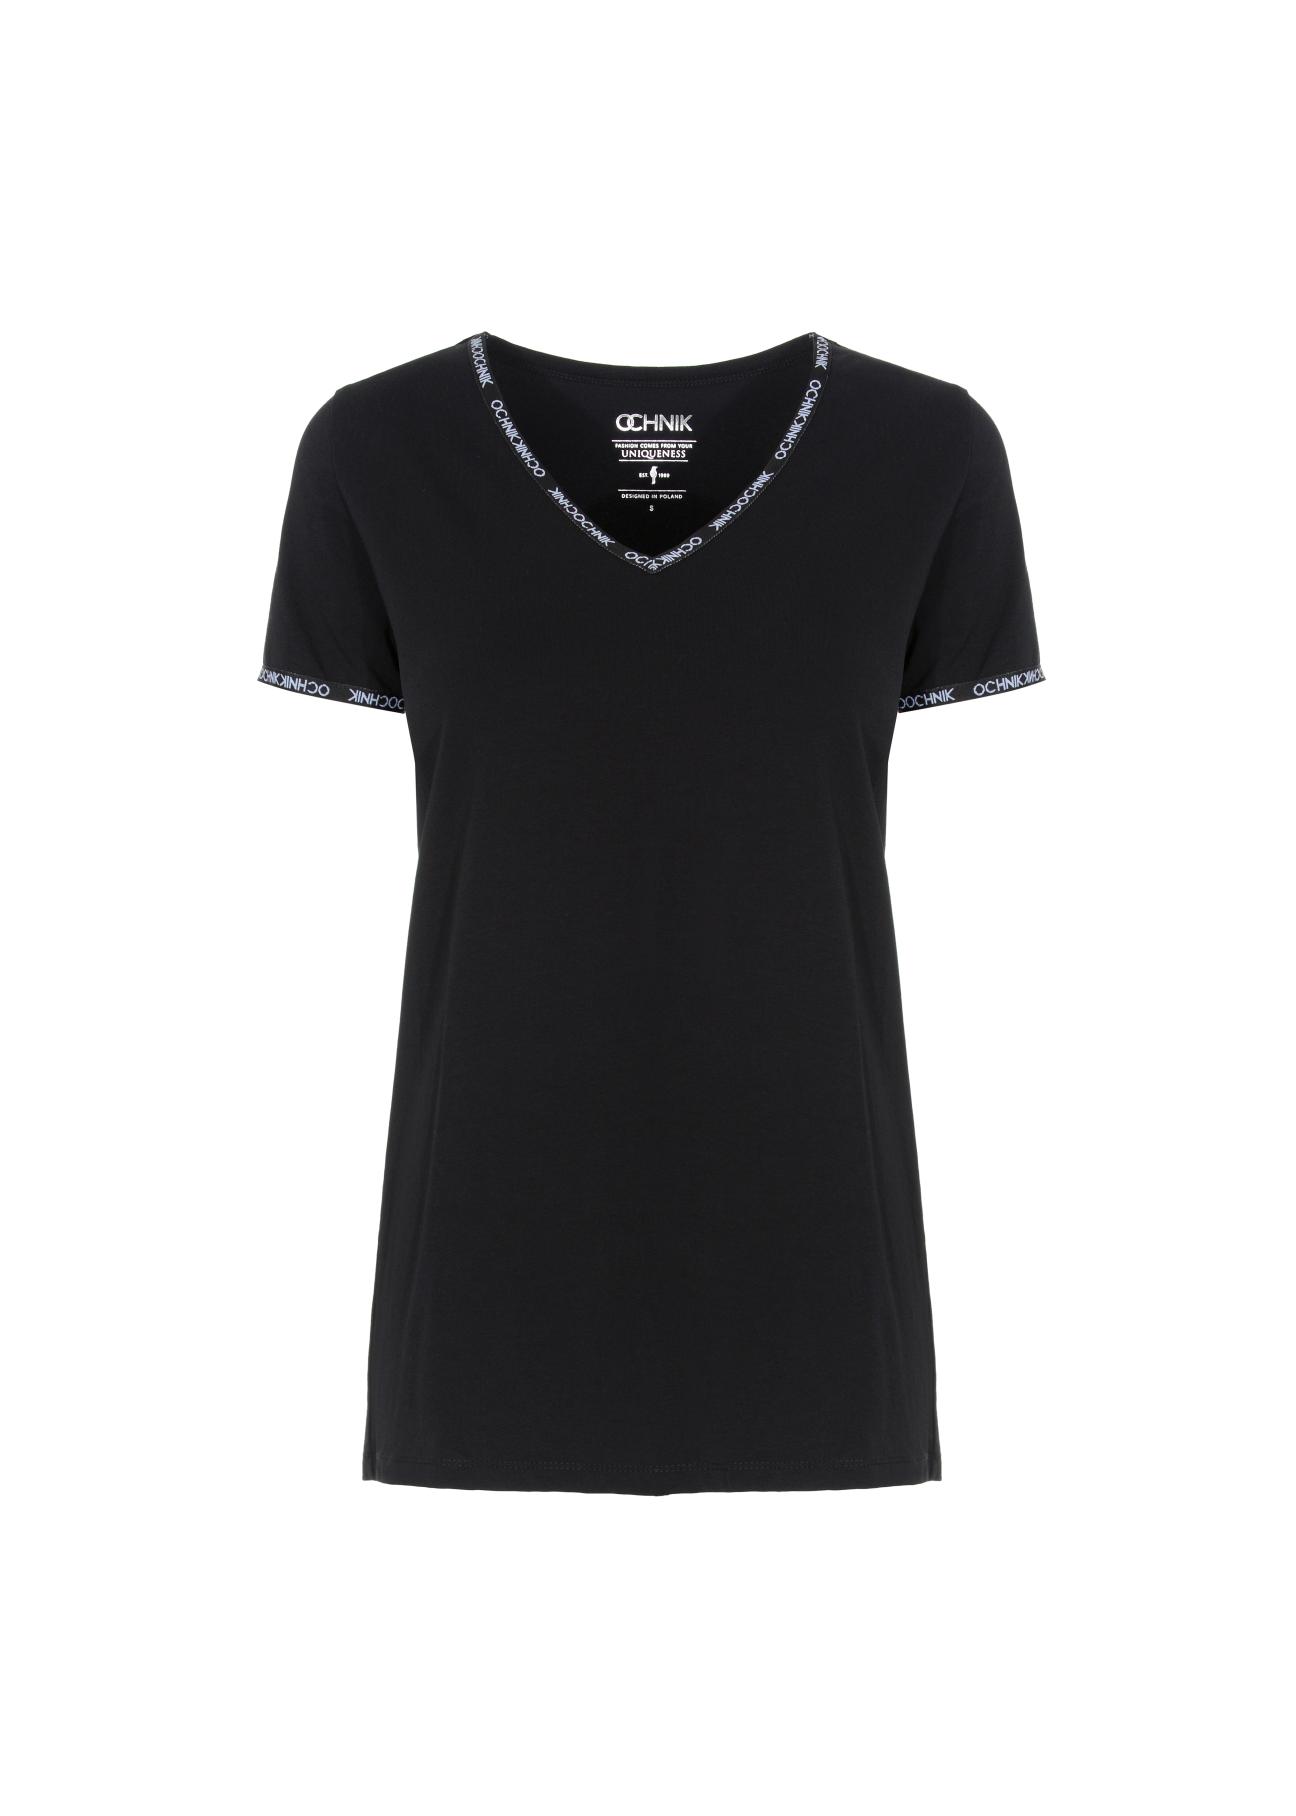 Czarny T-shirt z dekoltem V damski TSHDT-0061-99(W21)